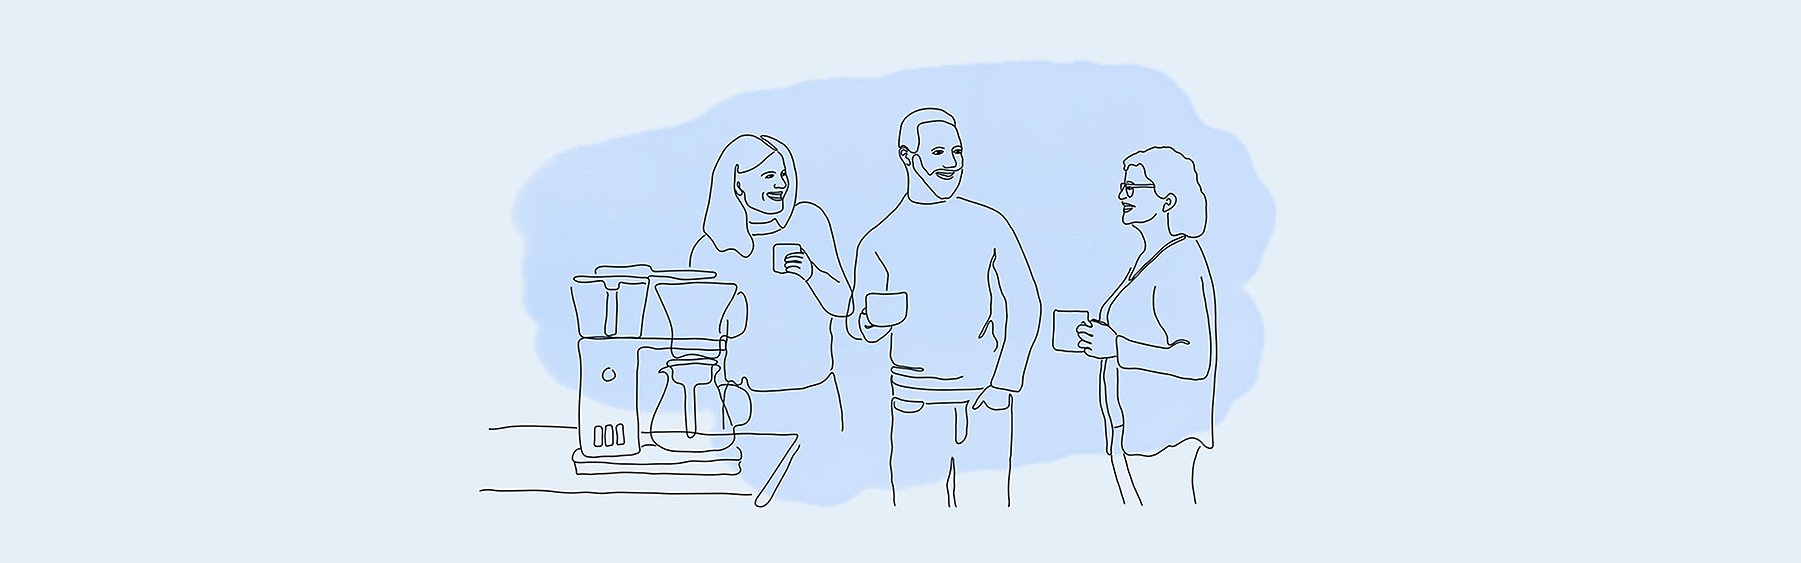 Tre arbetstagare vid kaffebryggaren.